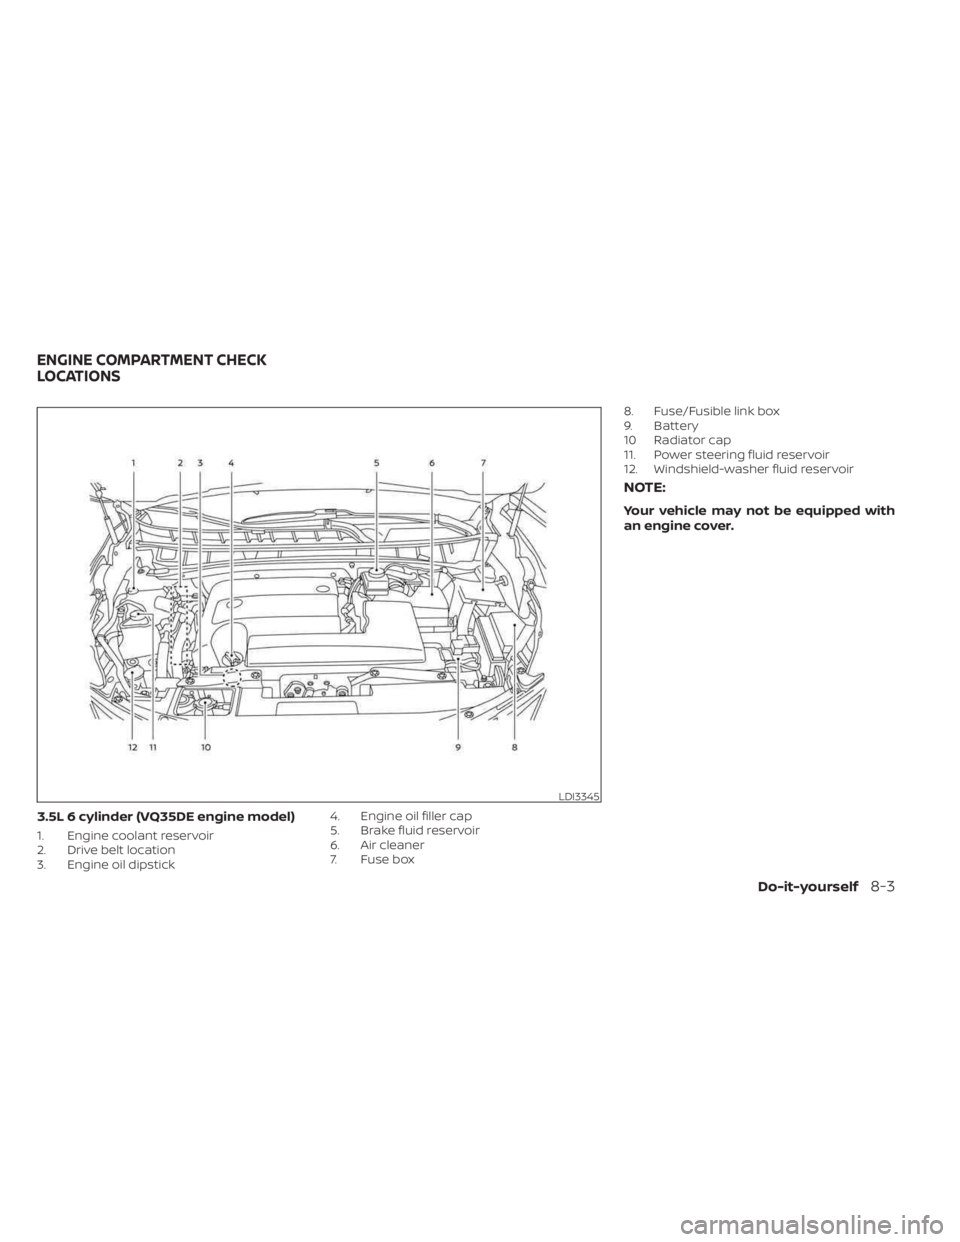 NISSAN MURANO 2023  Owners Manual 3.5L 6 cylinder (VQ35DE engine model)
1. Engine coolant reservoir
2. Drive belt location
3. Engine oil dipstick4. Engine oil filler cap
5. Brake fluid reservoir
6. Air cleaner
7. Fuse box8. Fuse/Fusib